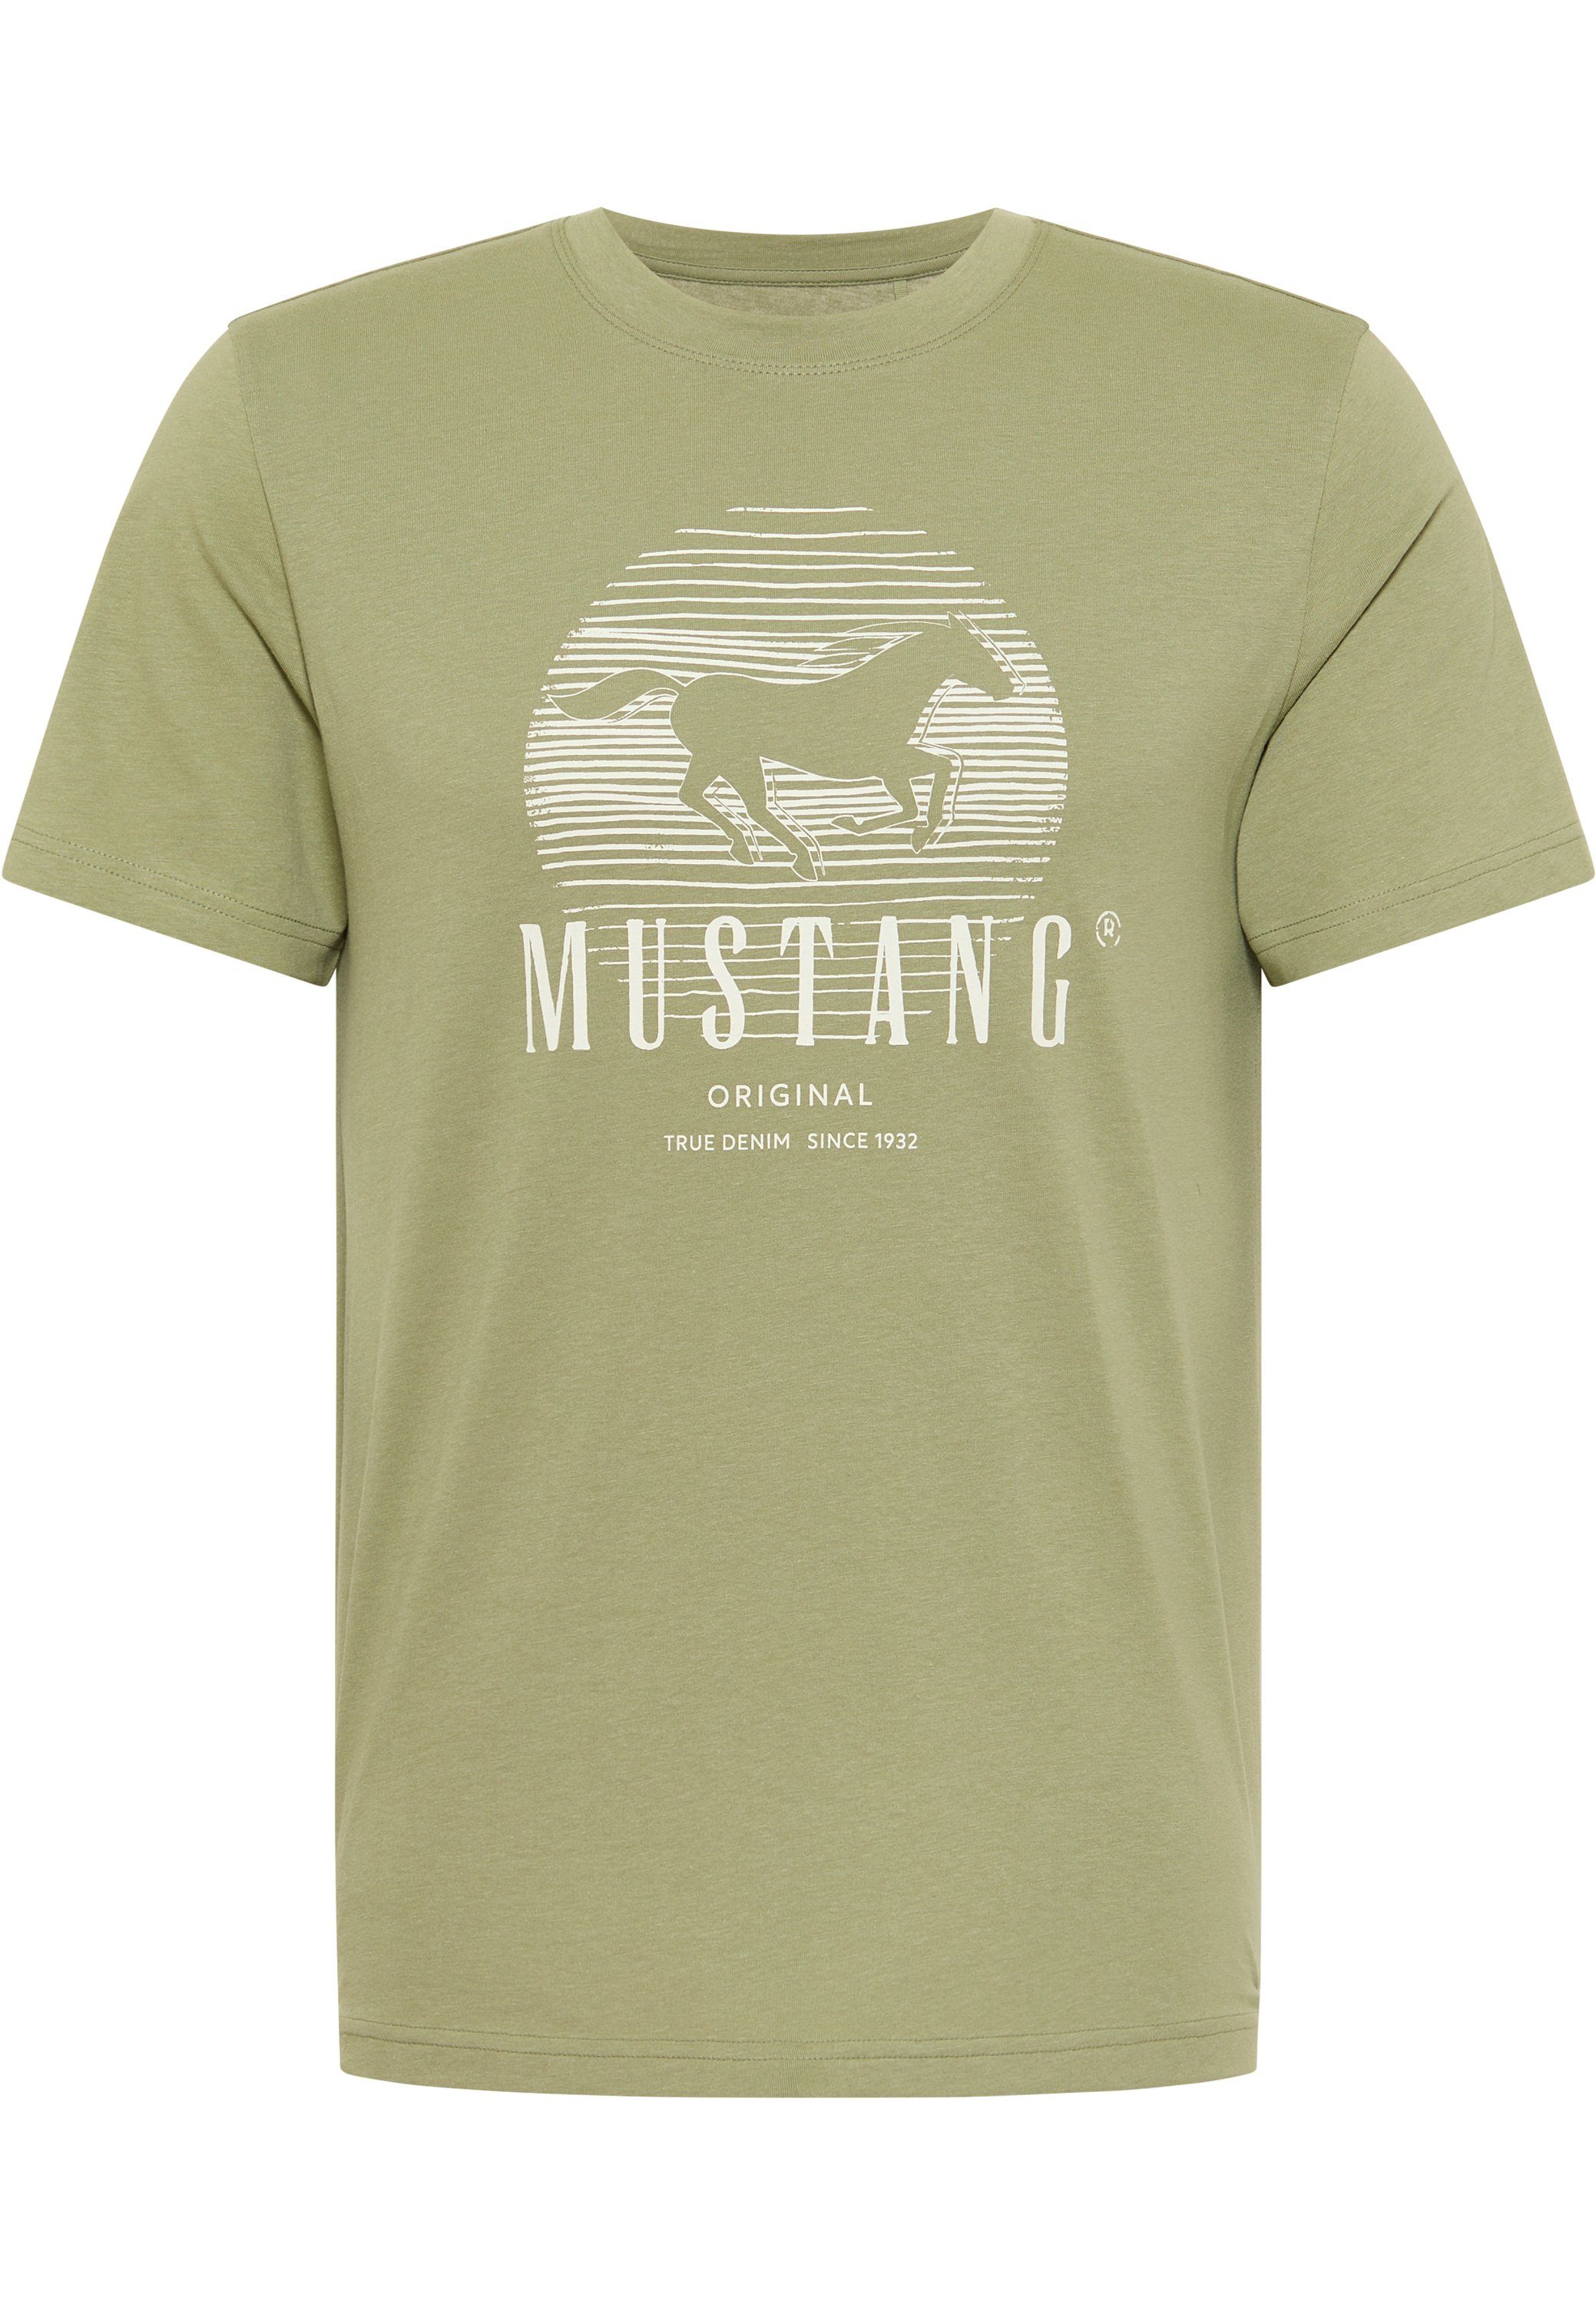 Print-Shirt MUSTANG Kurzarmshirt Mustang hellgrün